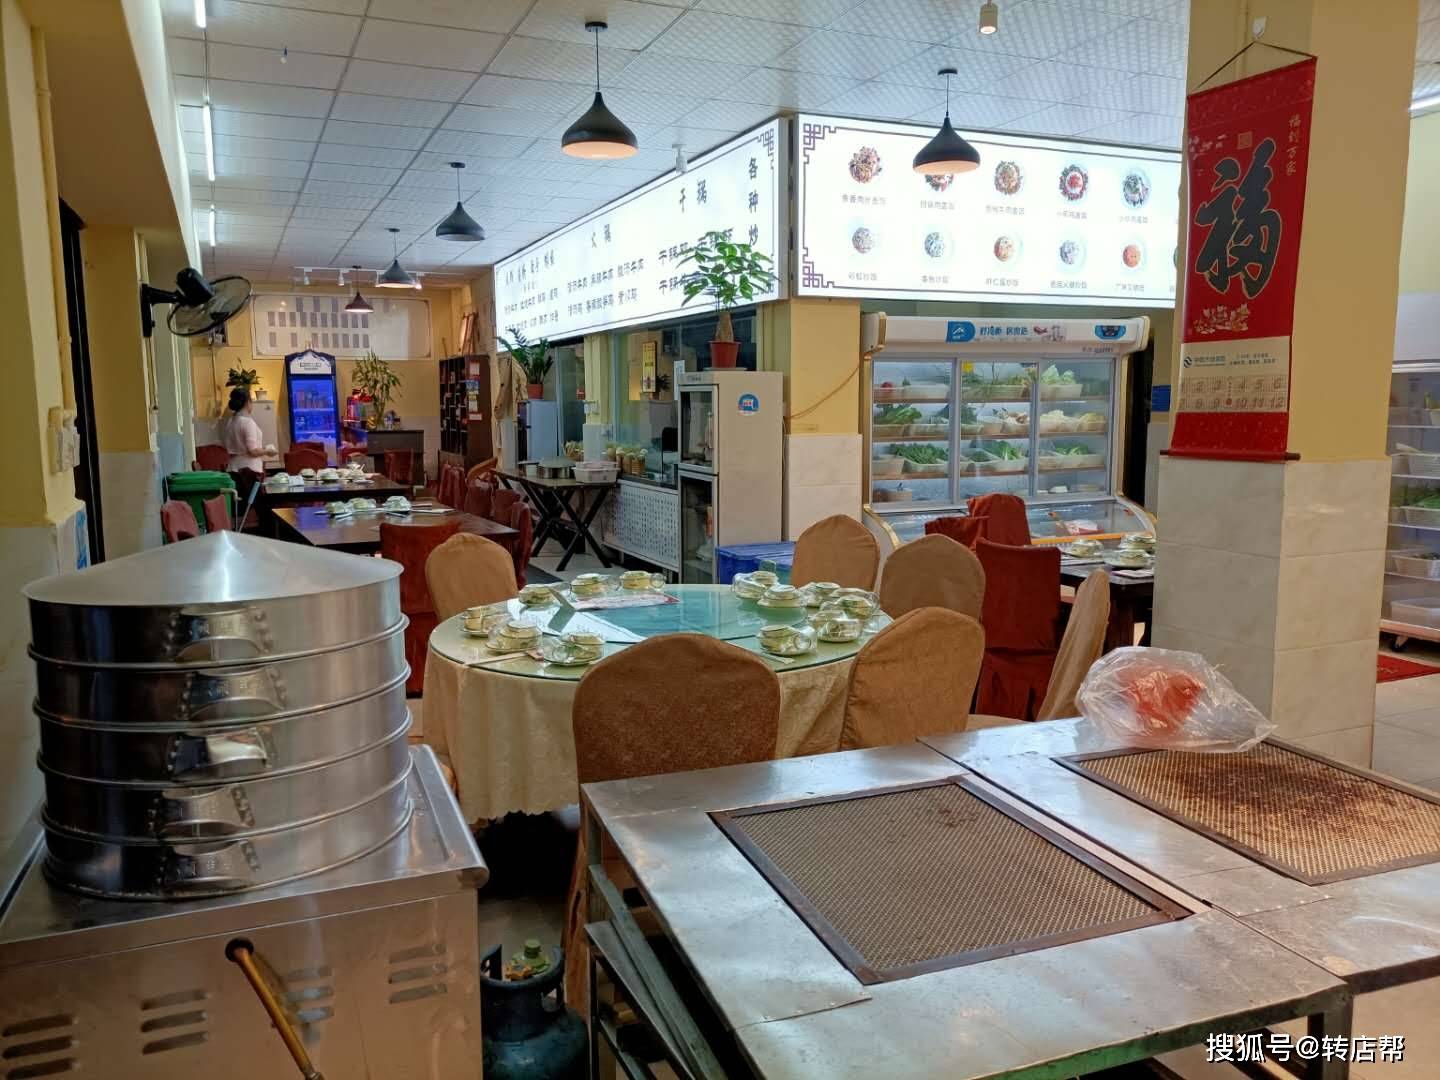 昆明饭店转让:临街火车站 可经营早中晚三餐